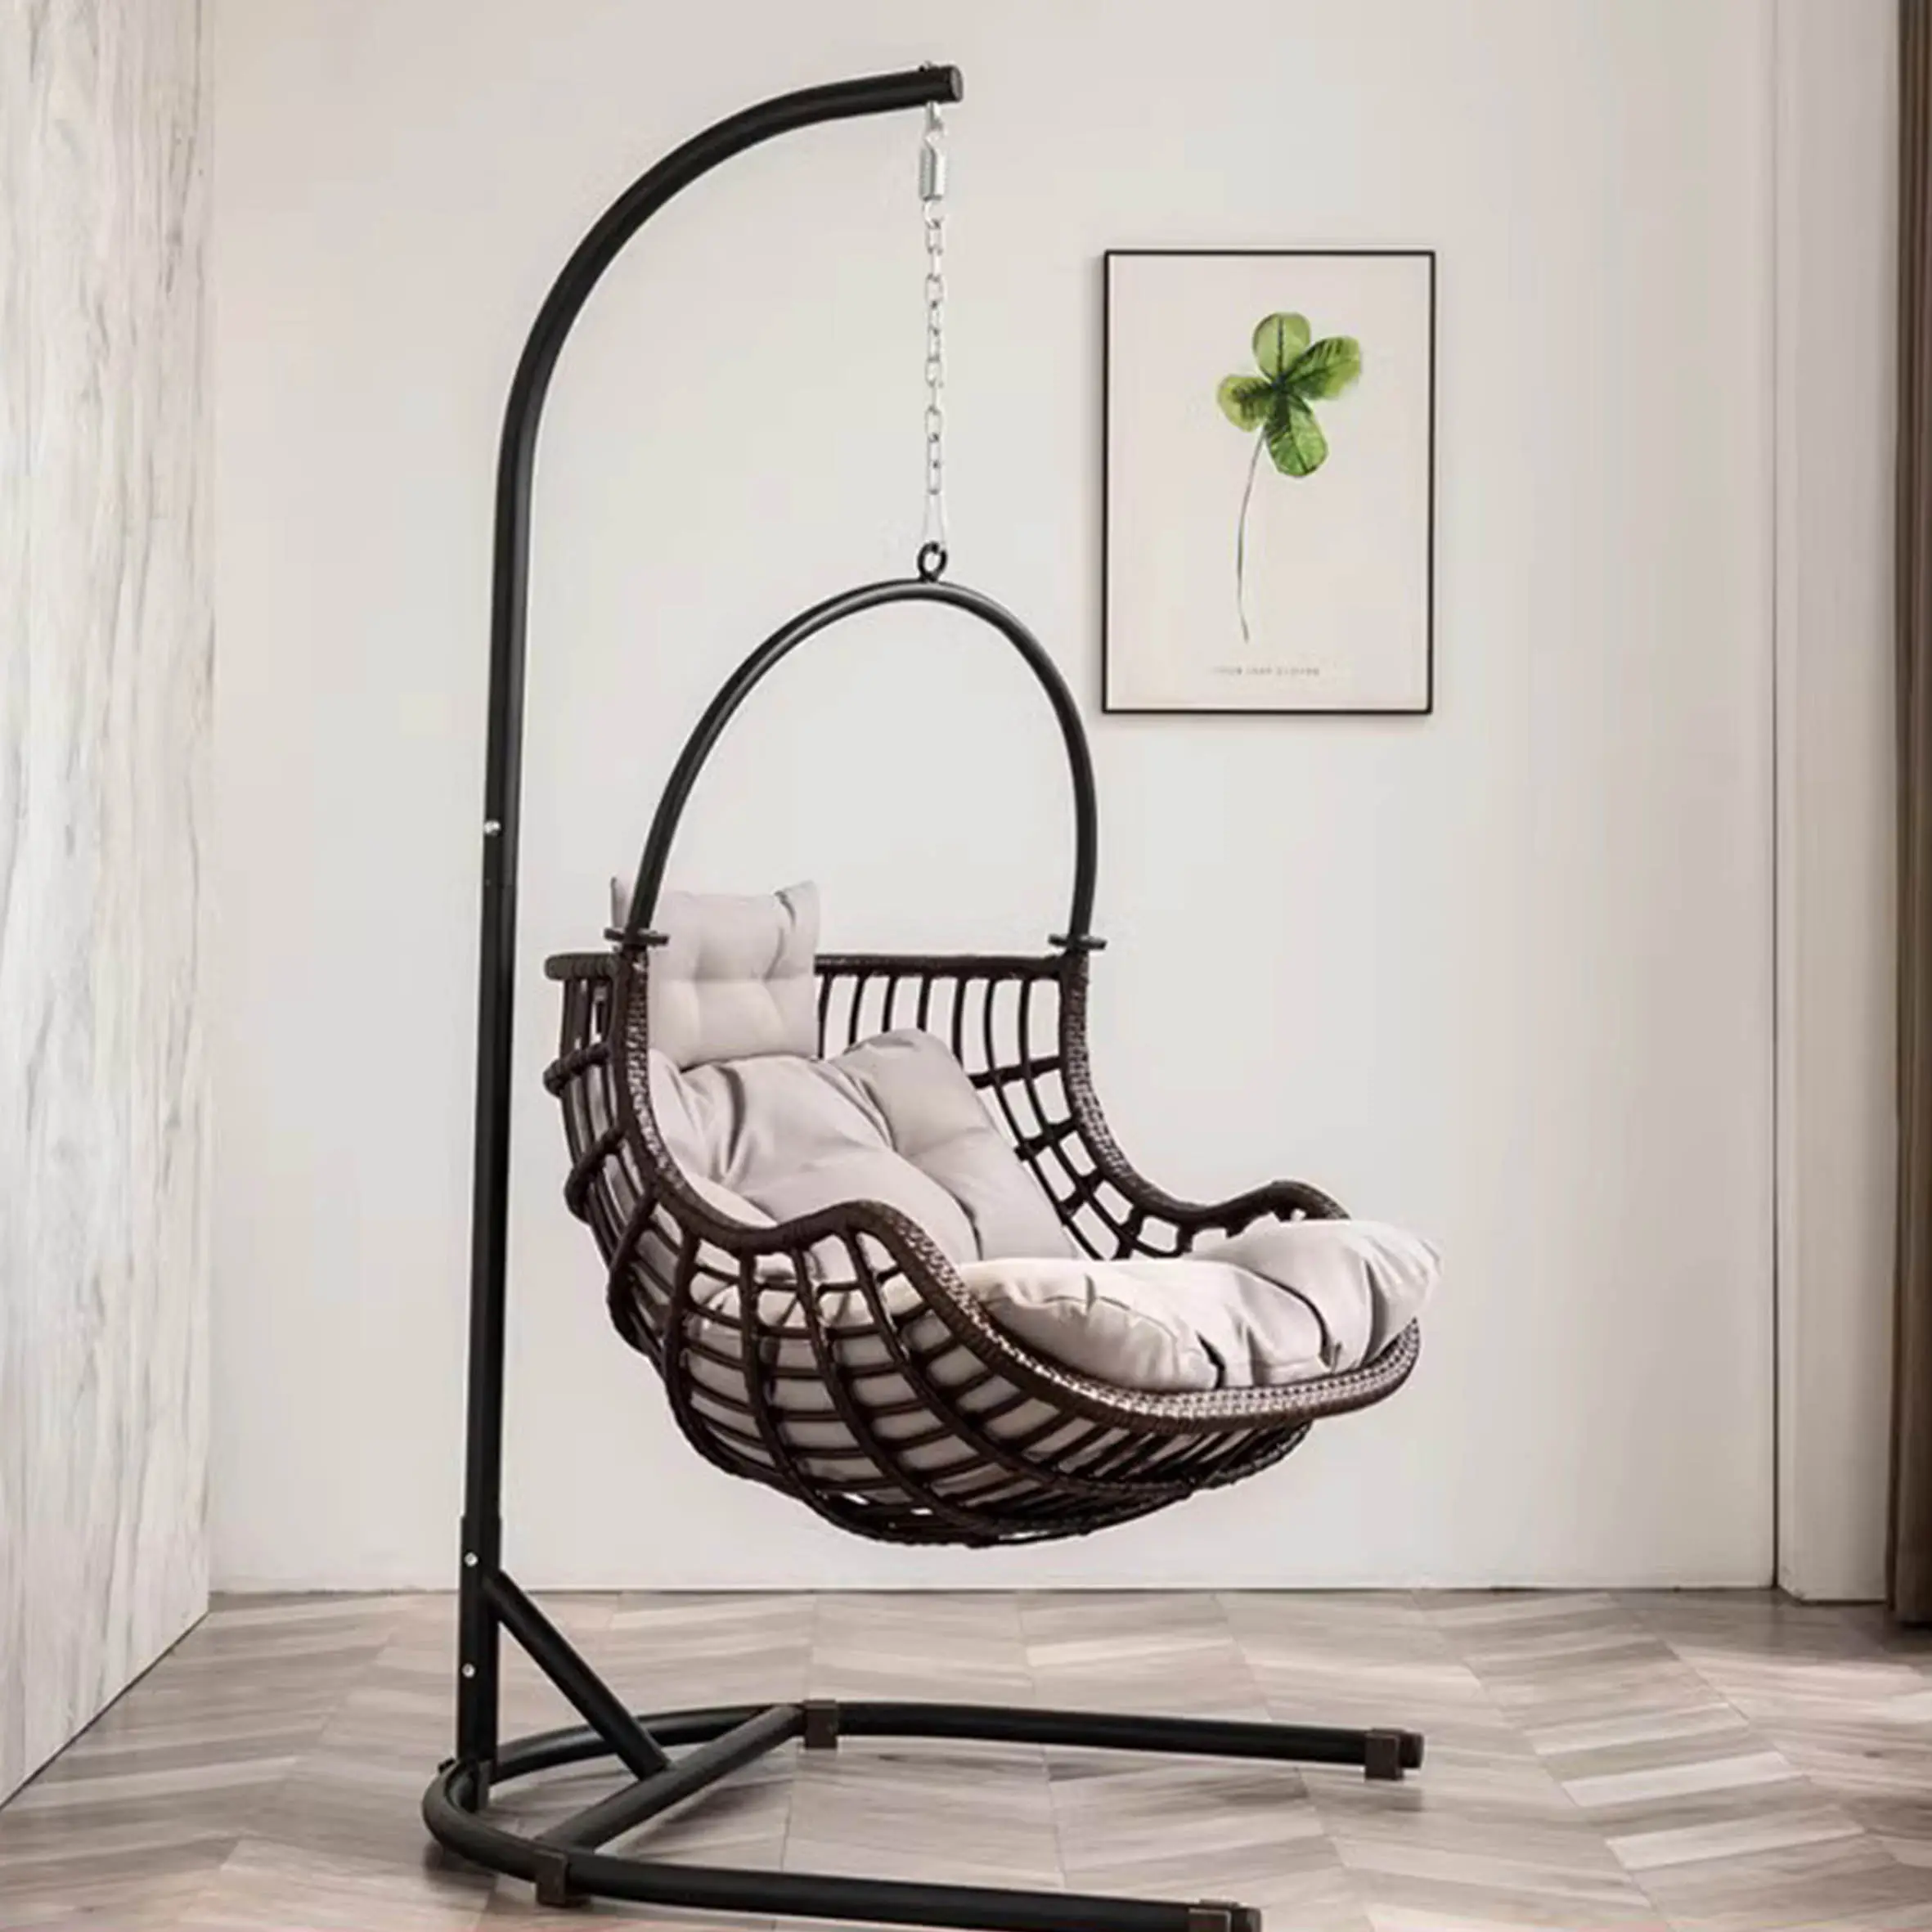 계란 모양의 교수형 바구니 스윙 의자 투명 아크릴, 바구니 볼 의자 홈 거실 정원 레저 라운지 의자/